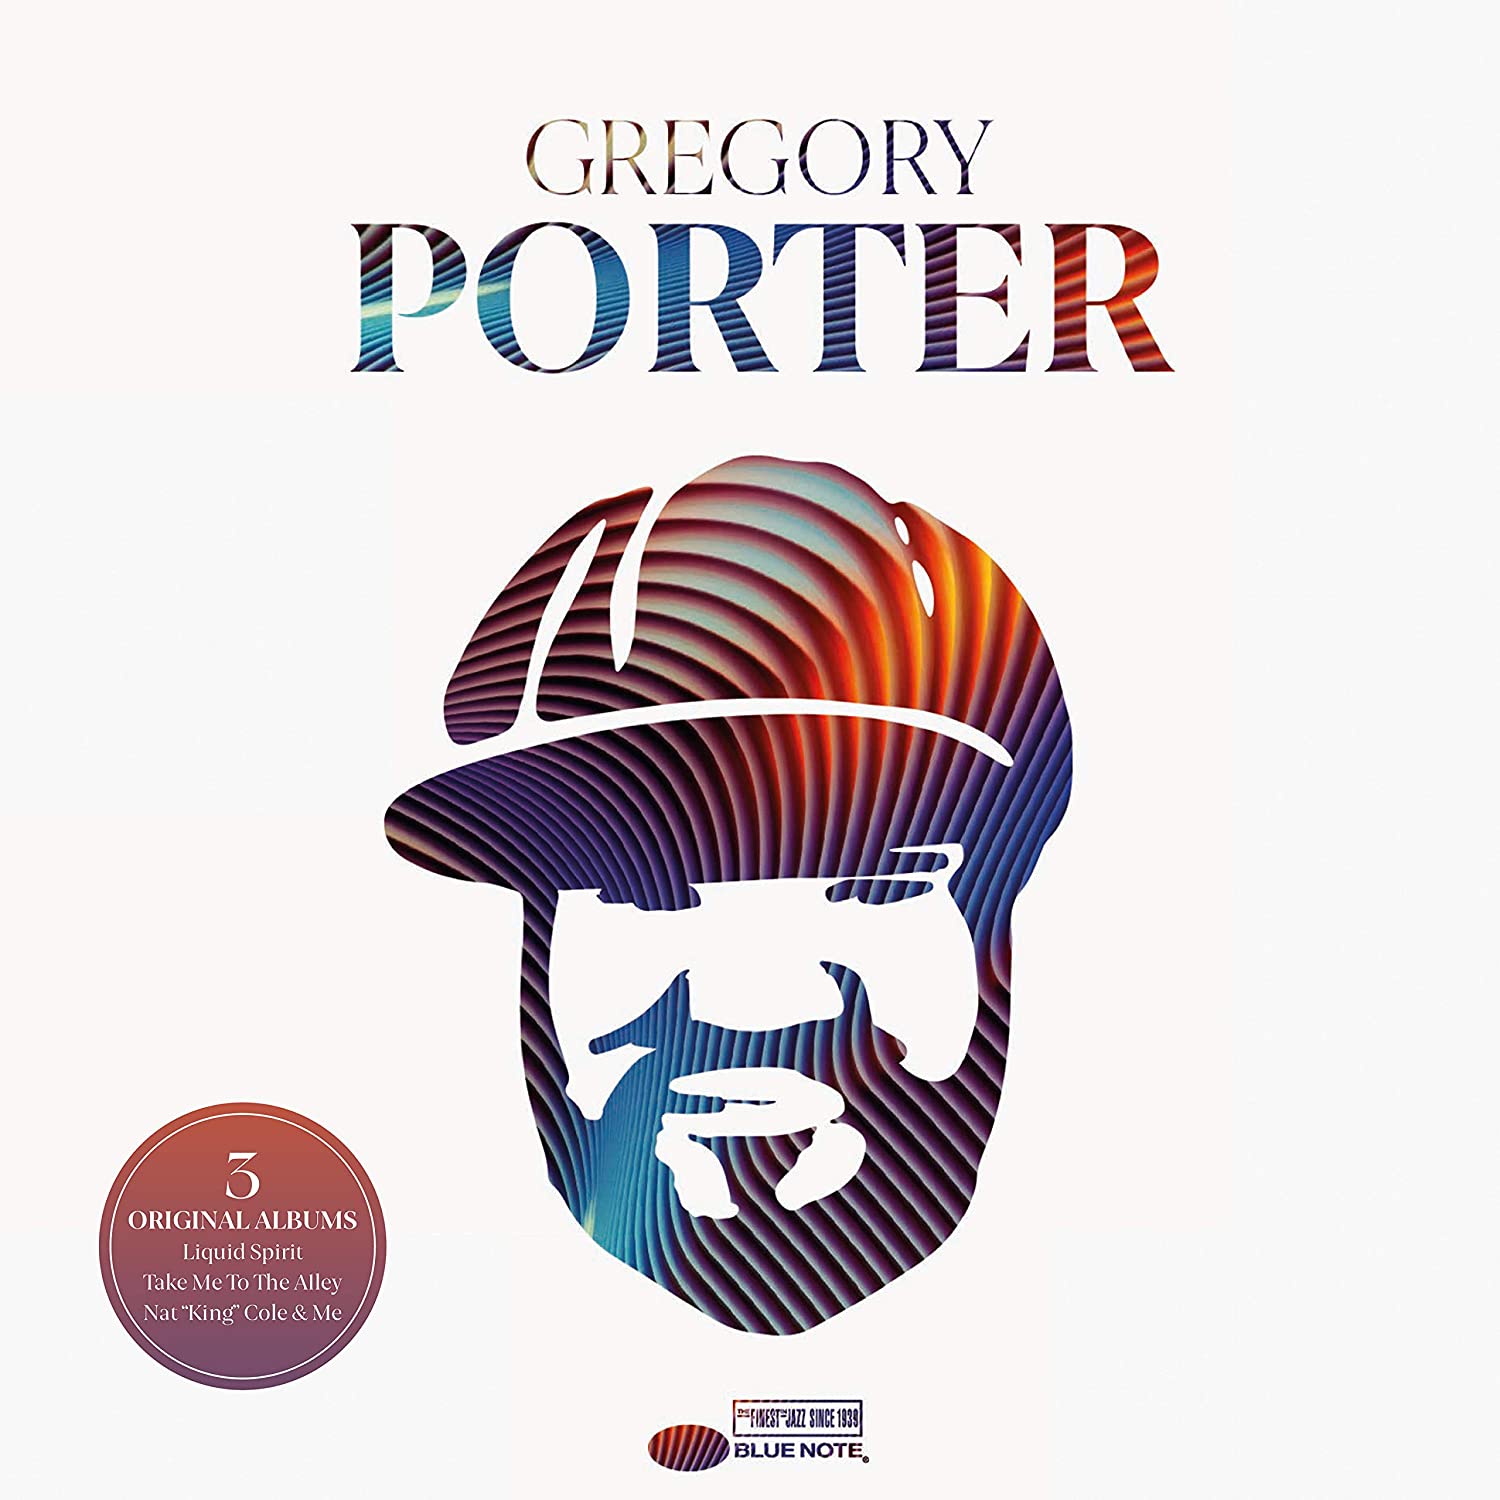 Gregory Porter - Gregory Porter "3 Original Albums"